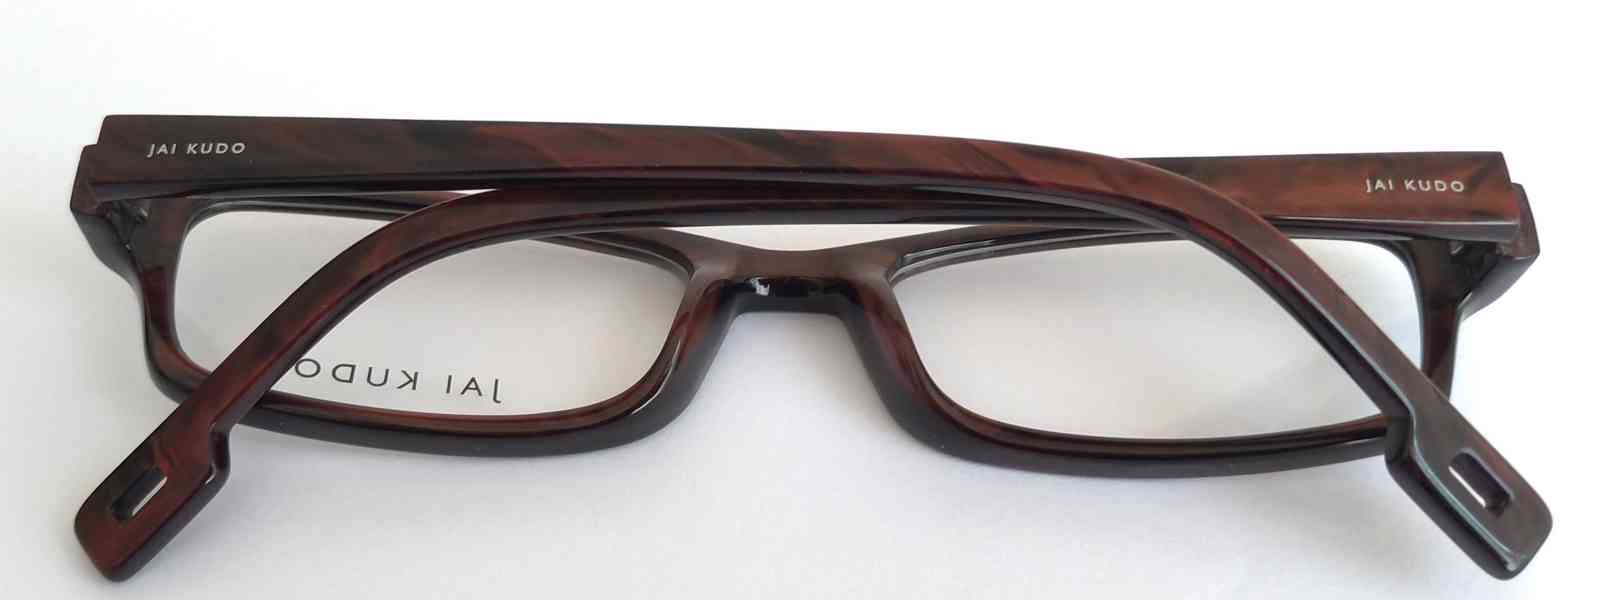 JAI KUDO 1733 P03 dámské brýlové obruby 50-18-135 MOC:2600Kč - foto 8